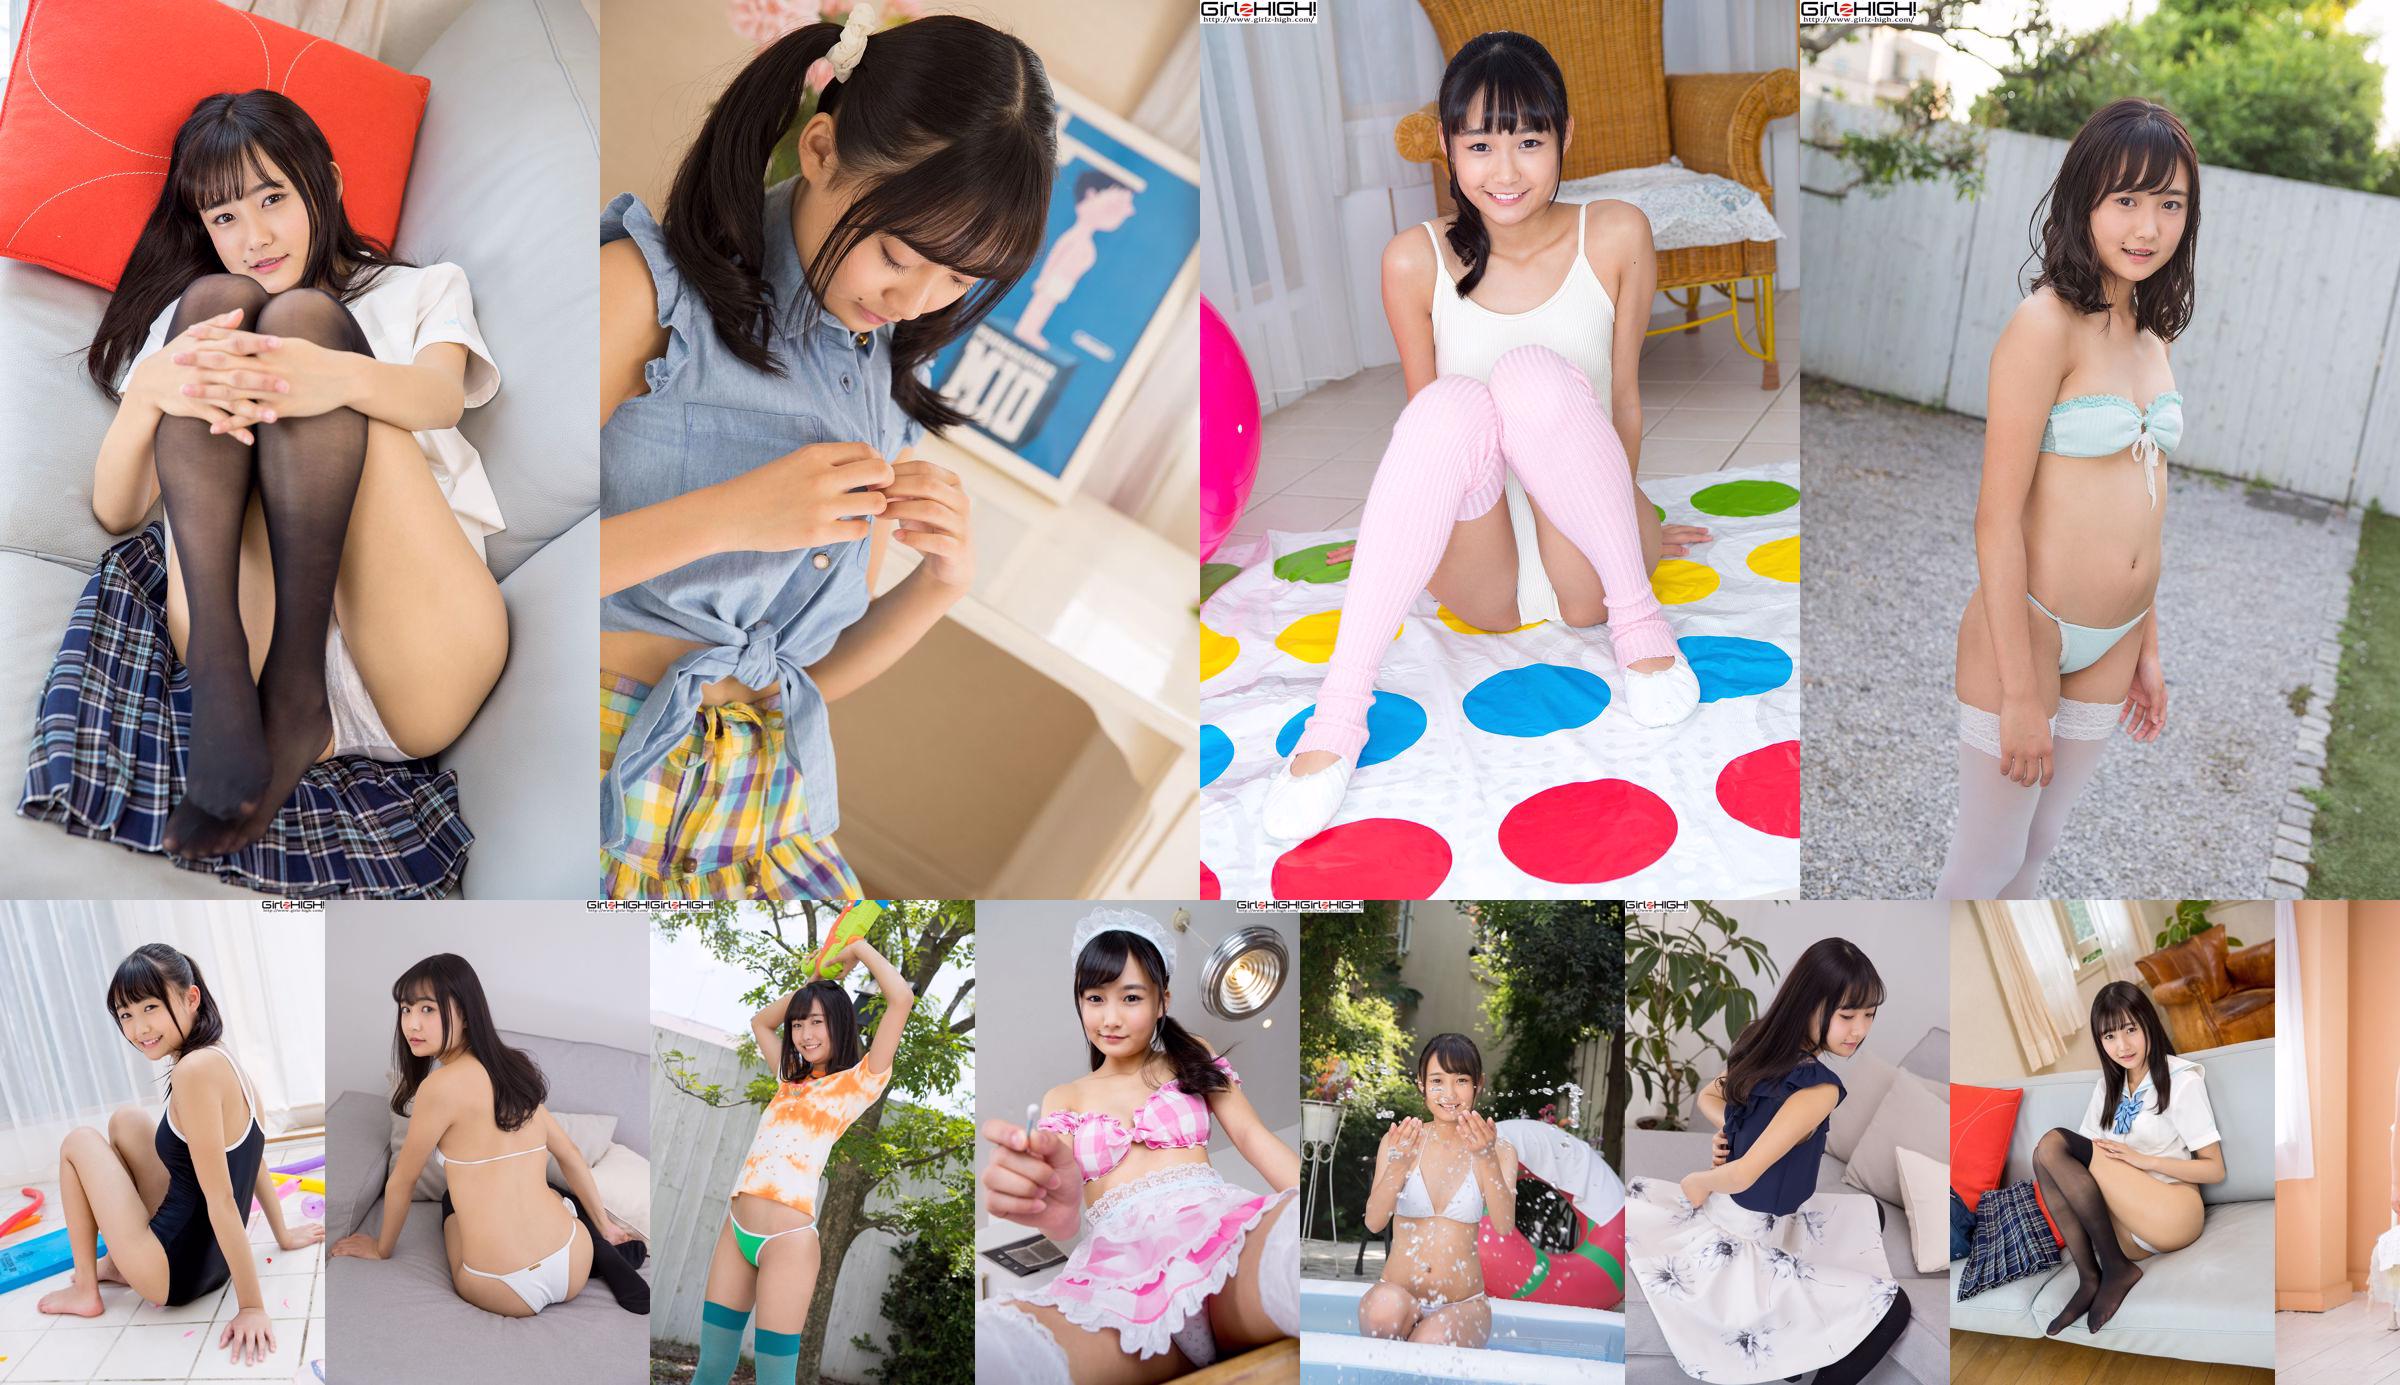 Peluncuran seragam "Pretty Girl School" Nishino Hanakoi [Girlz-High] No.596e97 Halaman 1